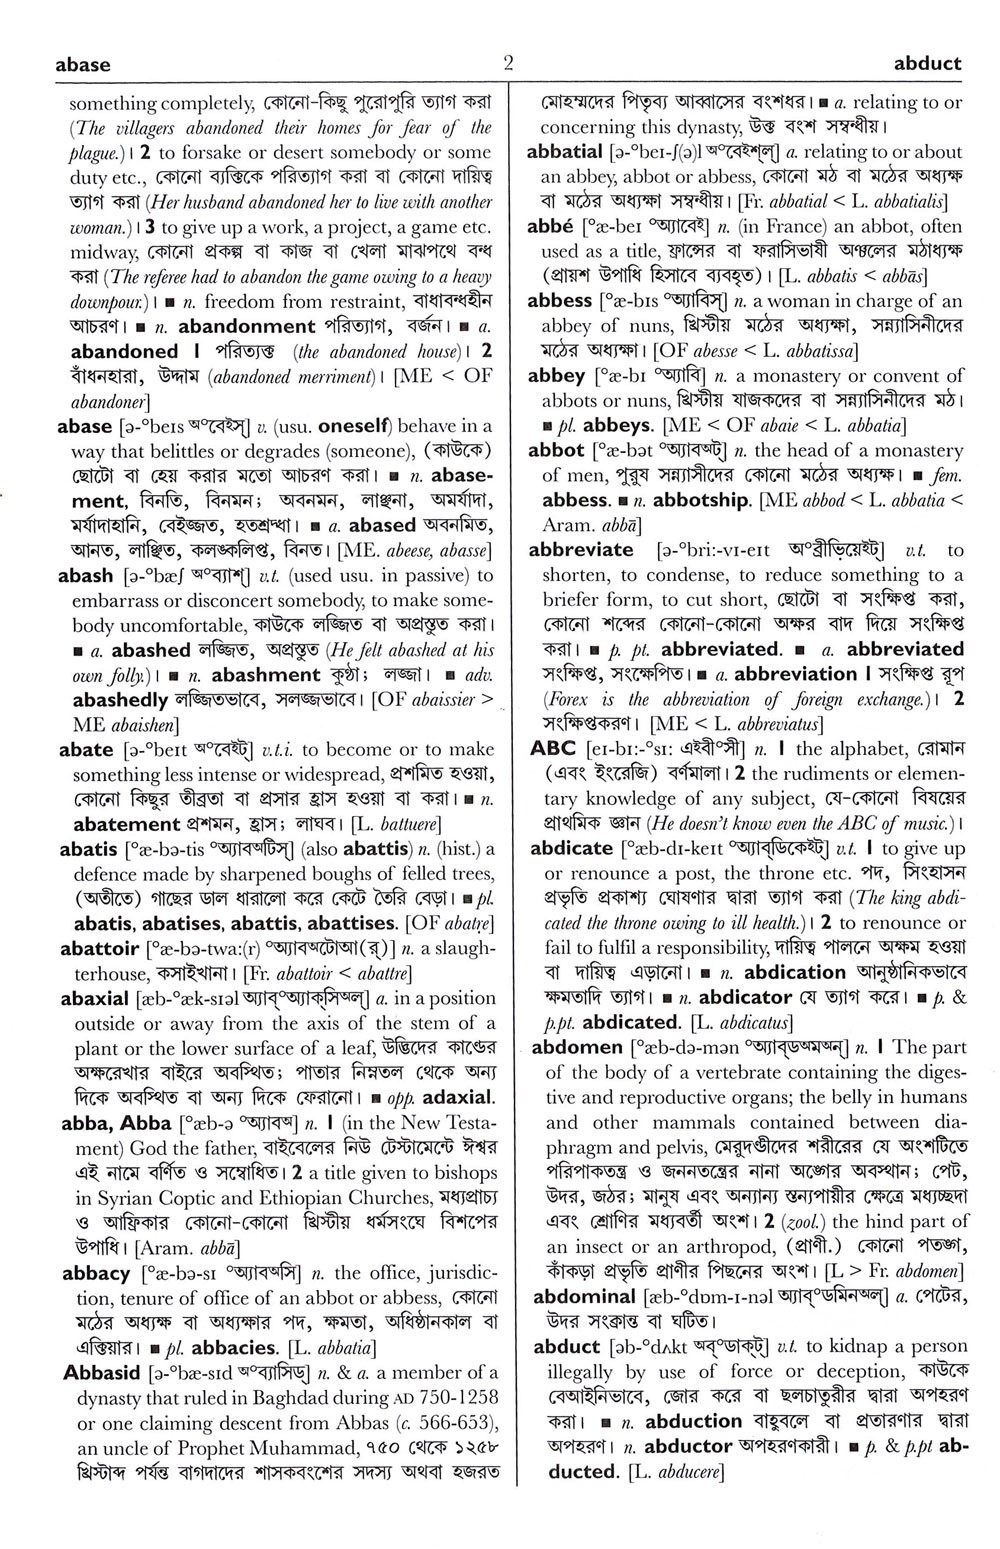 English to Bengali Dictionary - Meaning of Stream in Bengali is : প্রবাহ,  প্রবাহিত হত্তয়া, ভাসিয়া চলা, স্ট্রীম, জলস্রোত, জলপ্রবাহ, নদী, ক্ষুদ্রনদী,  ধারা, নদী(তরল পদার্থ